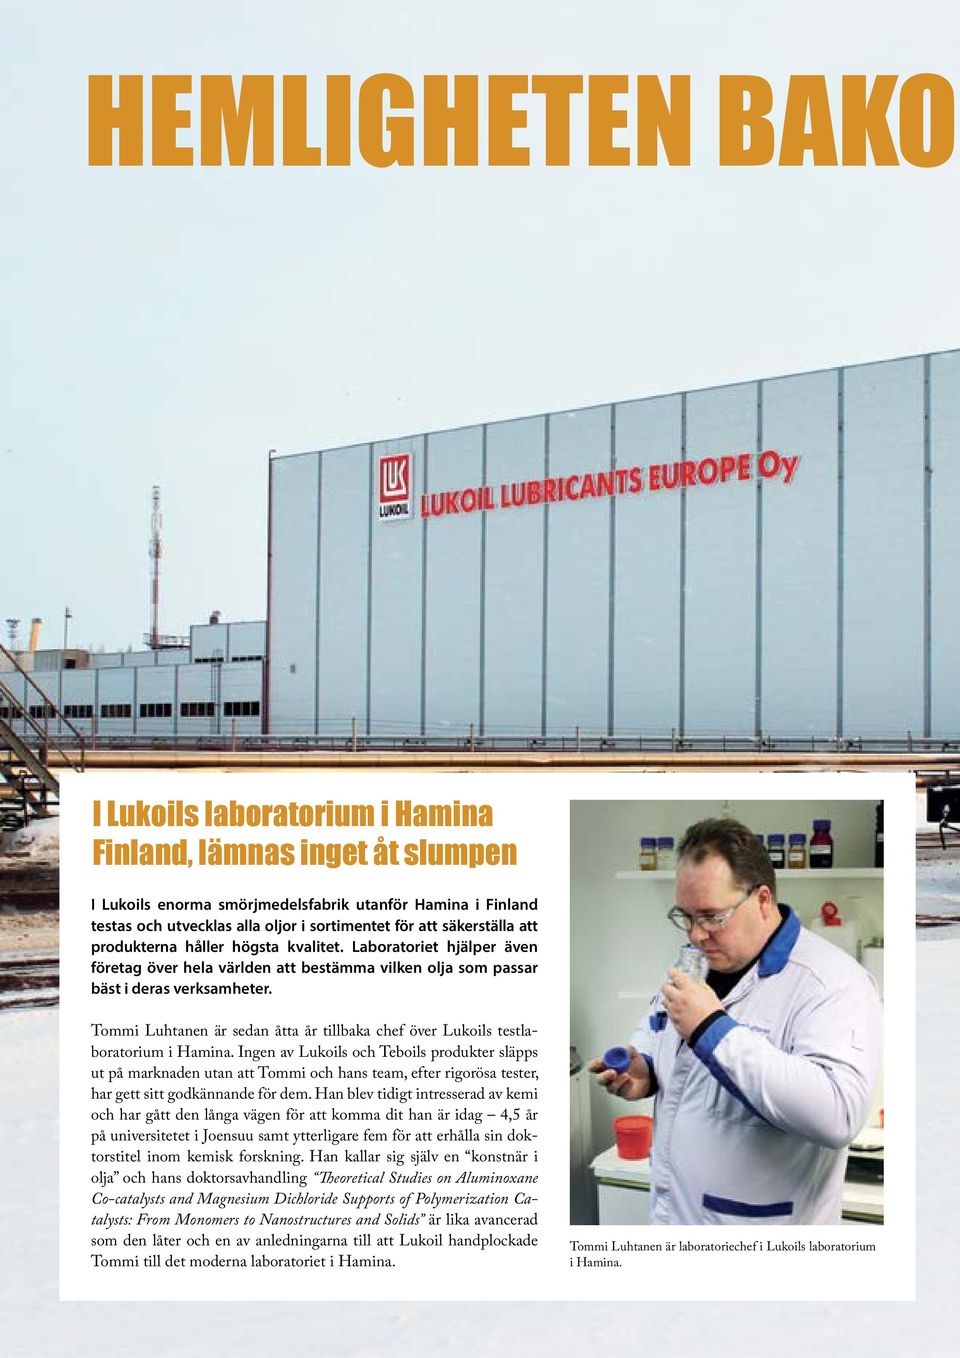 Tommi Luhtanen är sedan åtta år tillbaka chef över Lukoils testlaboratorium i Hamina.